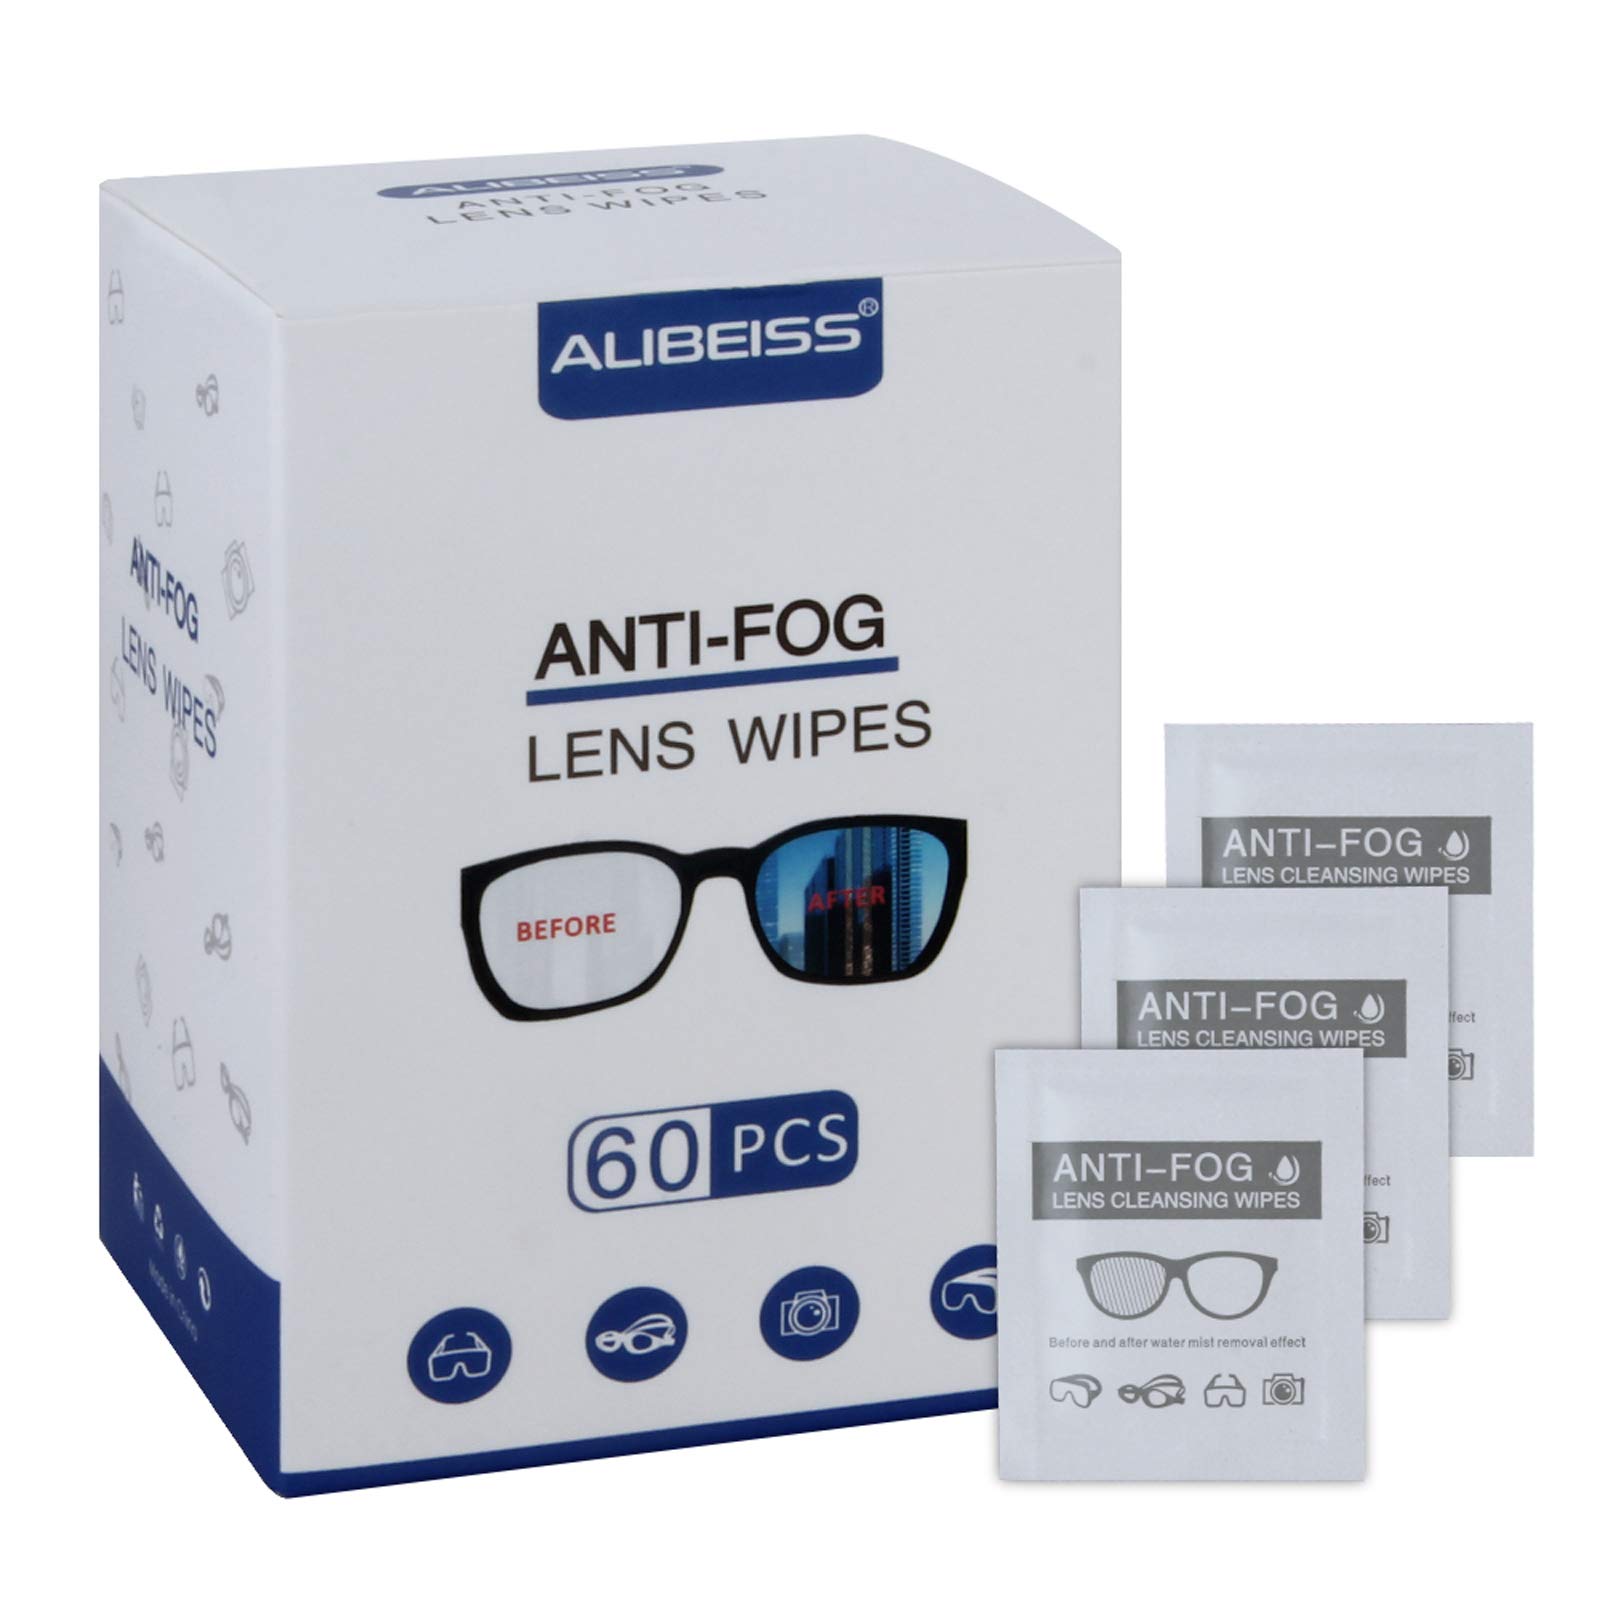 Alibeiss Anti-Fog Lens Wipes Pre-Moistened Anti-Fog Wipes 6 x 5 for Eye Glasses (60 Pack)